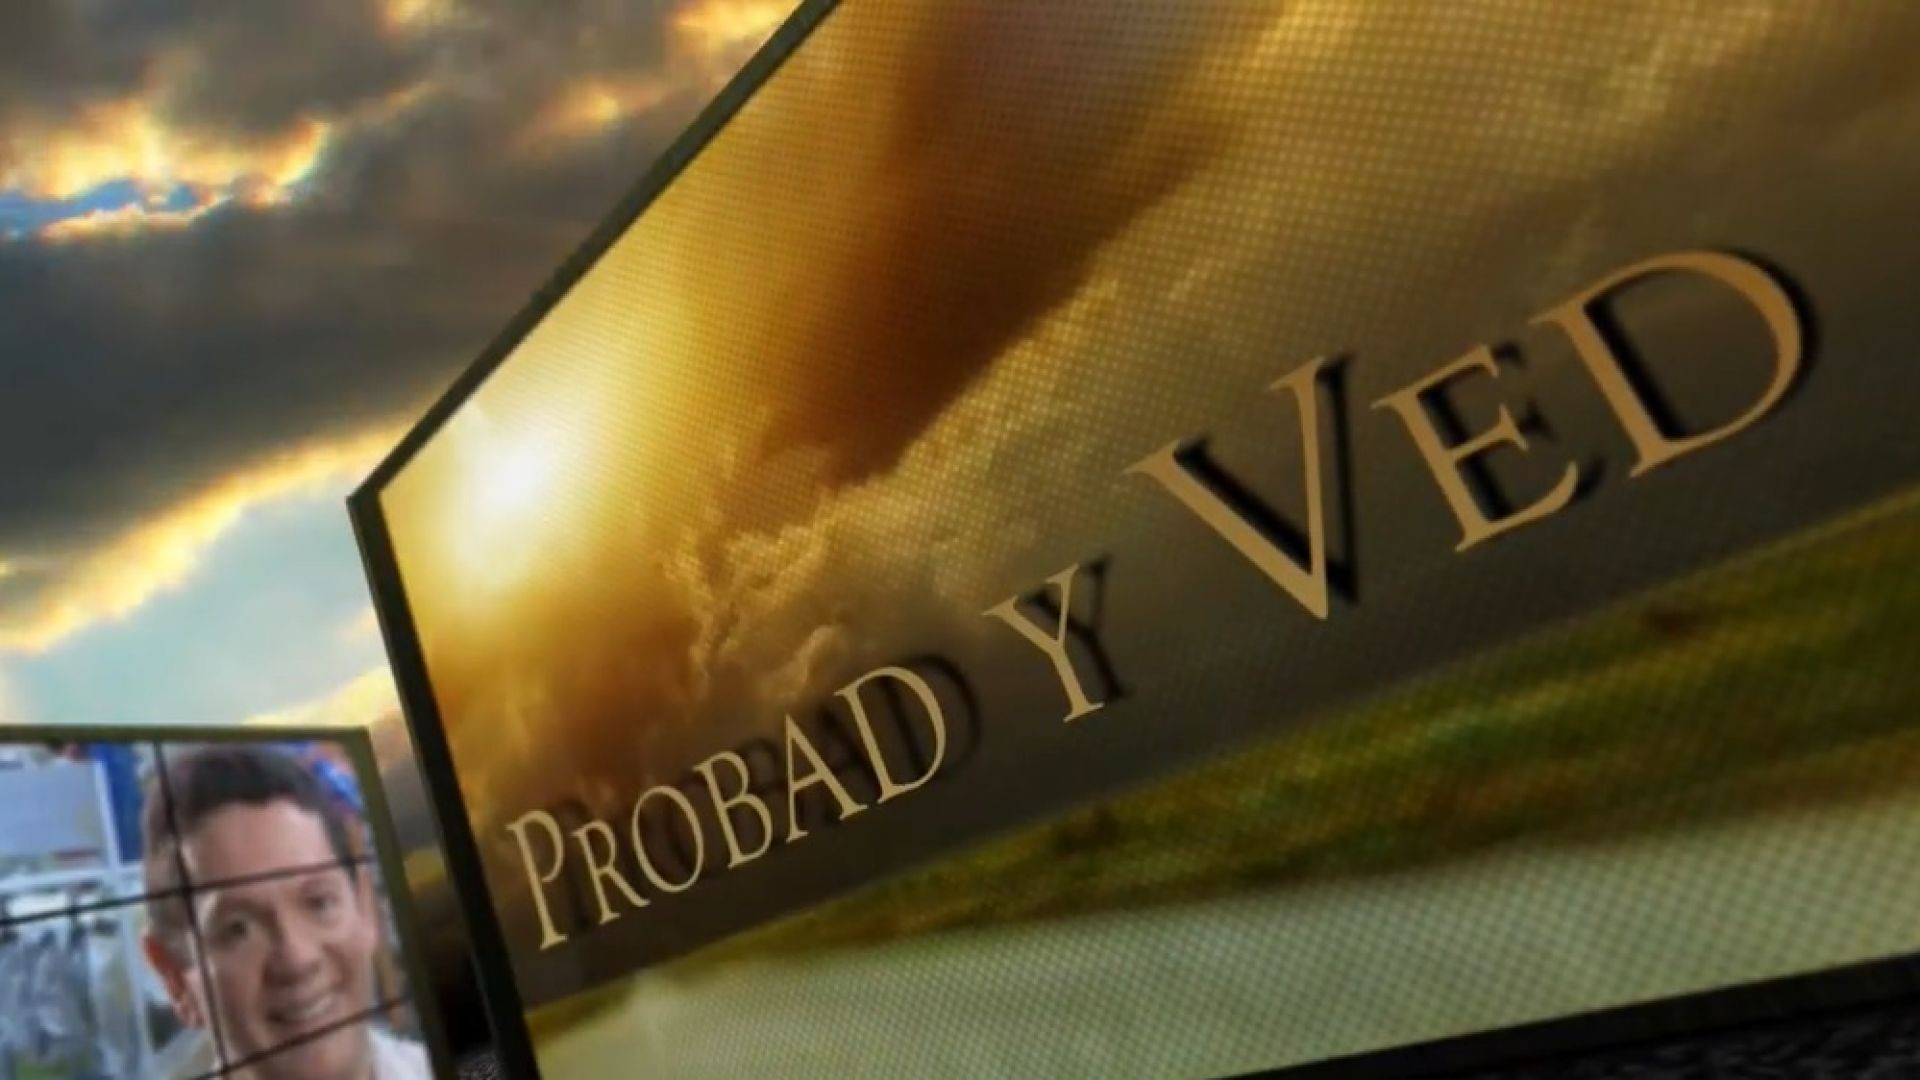 Probad y Ved 2013 - Siempre fiel - 27/Abr